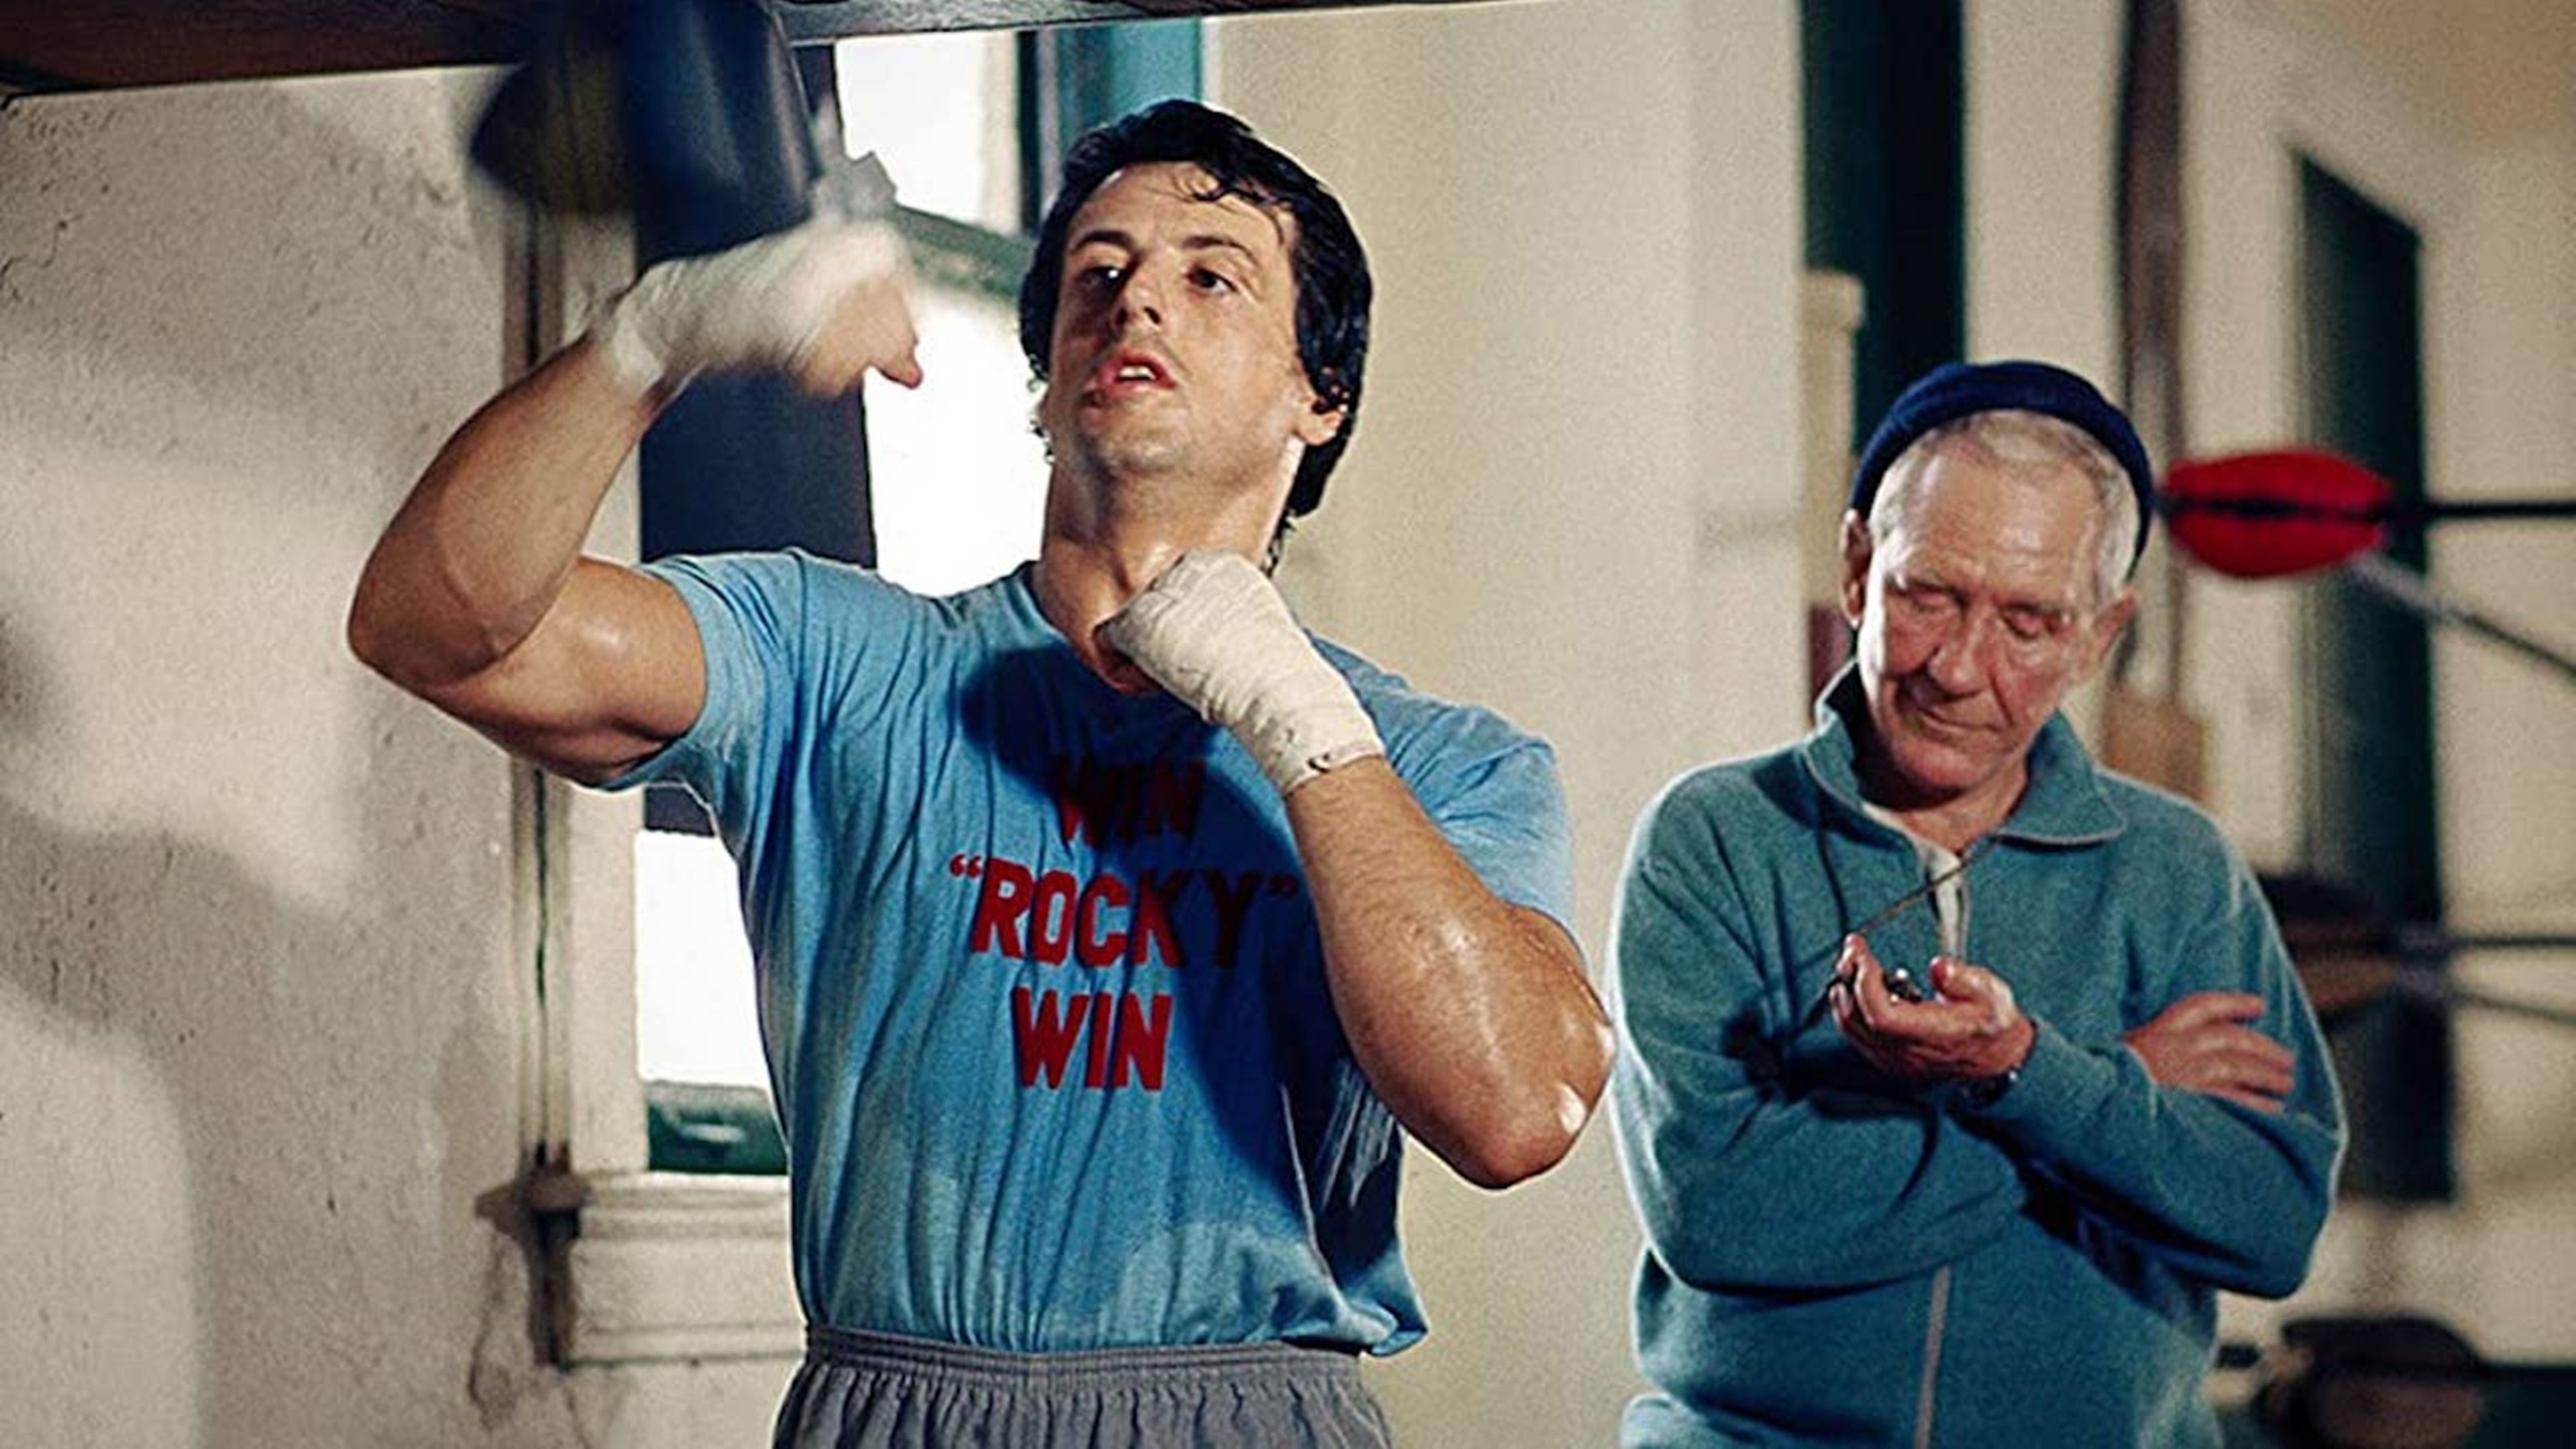 10 datos curiosos sobre Rocky Balboa, el personaje más famoso de